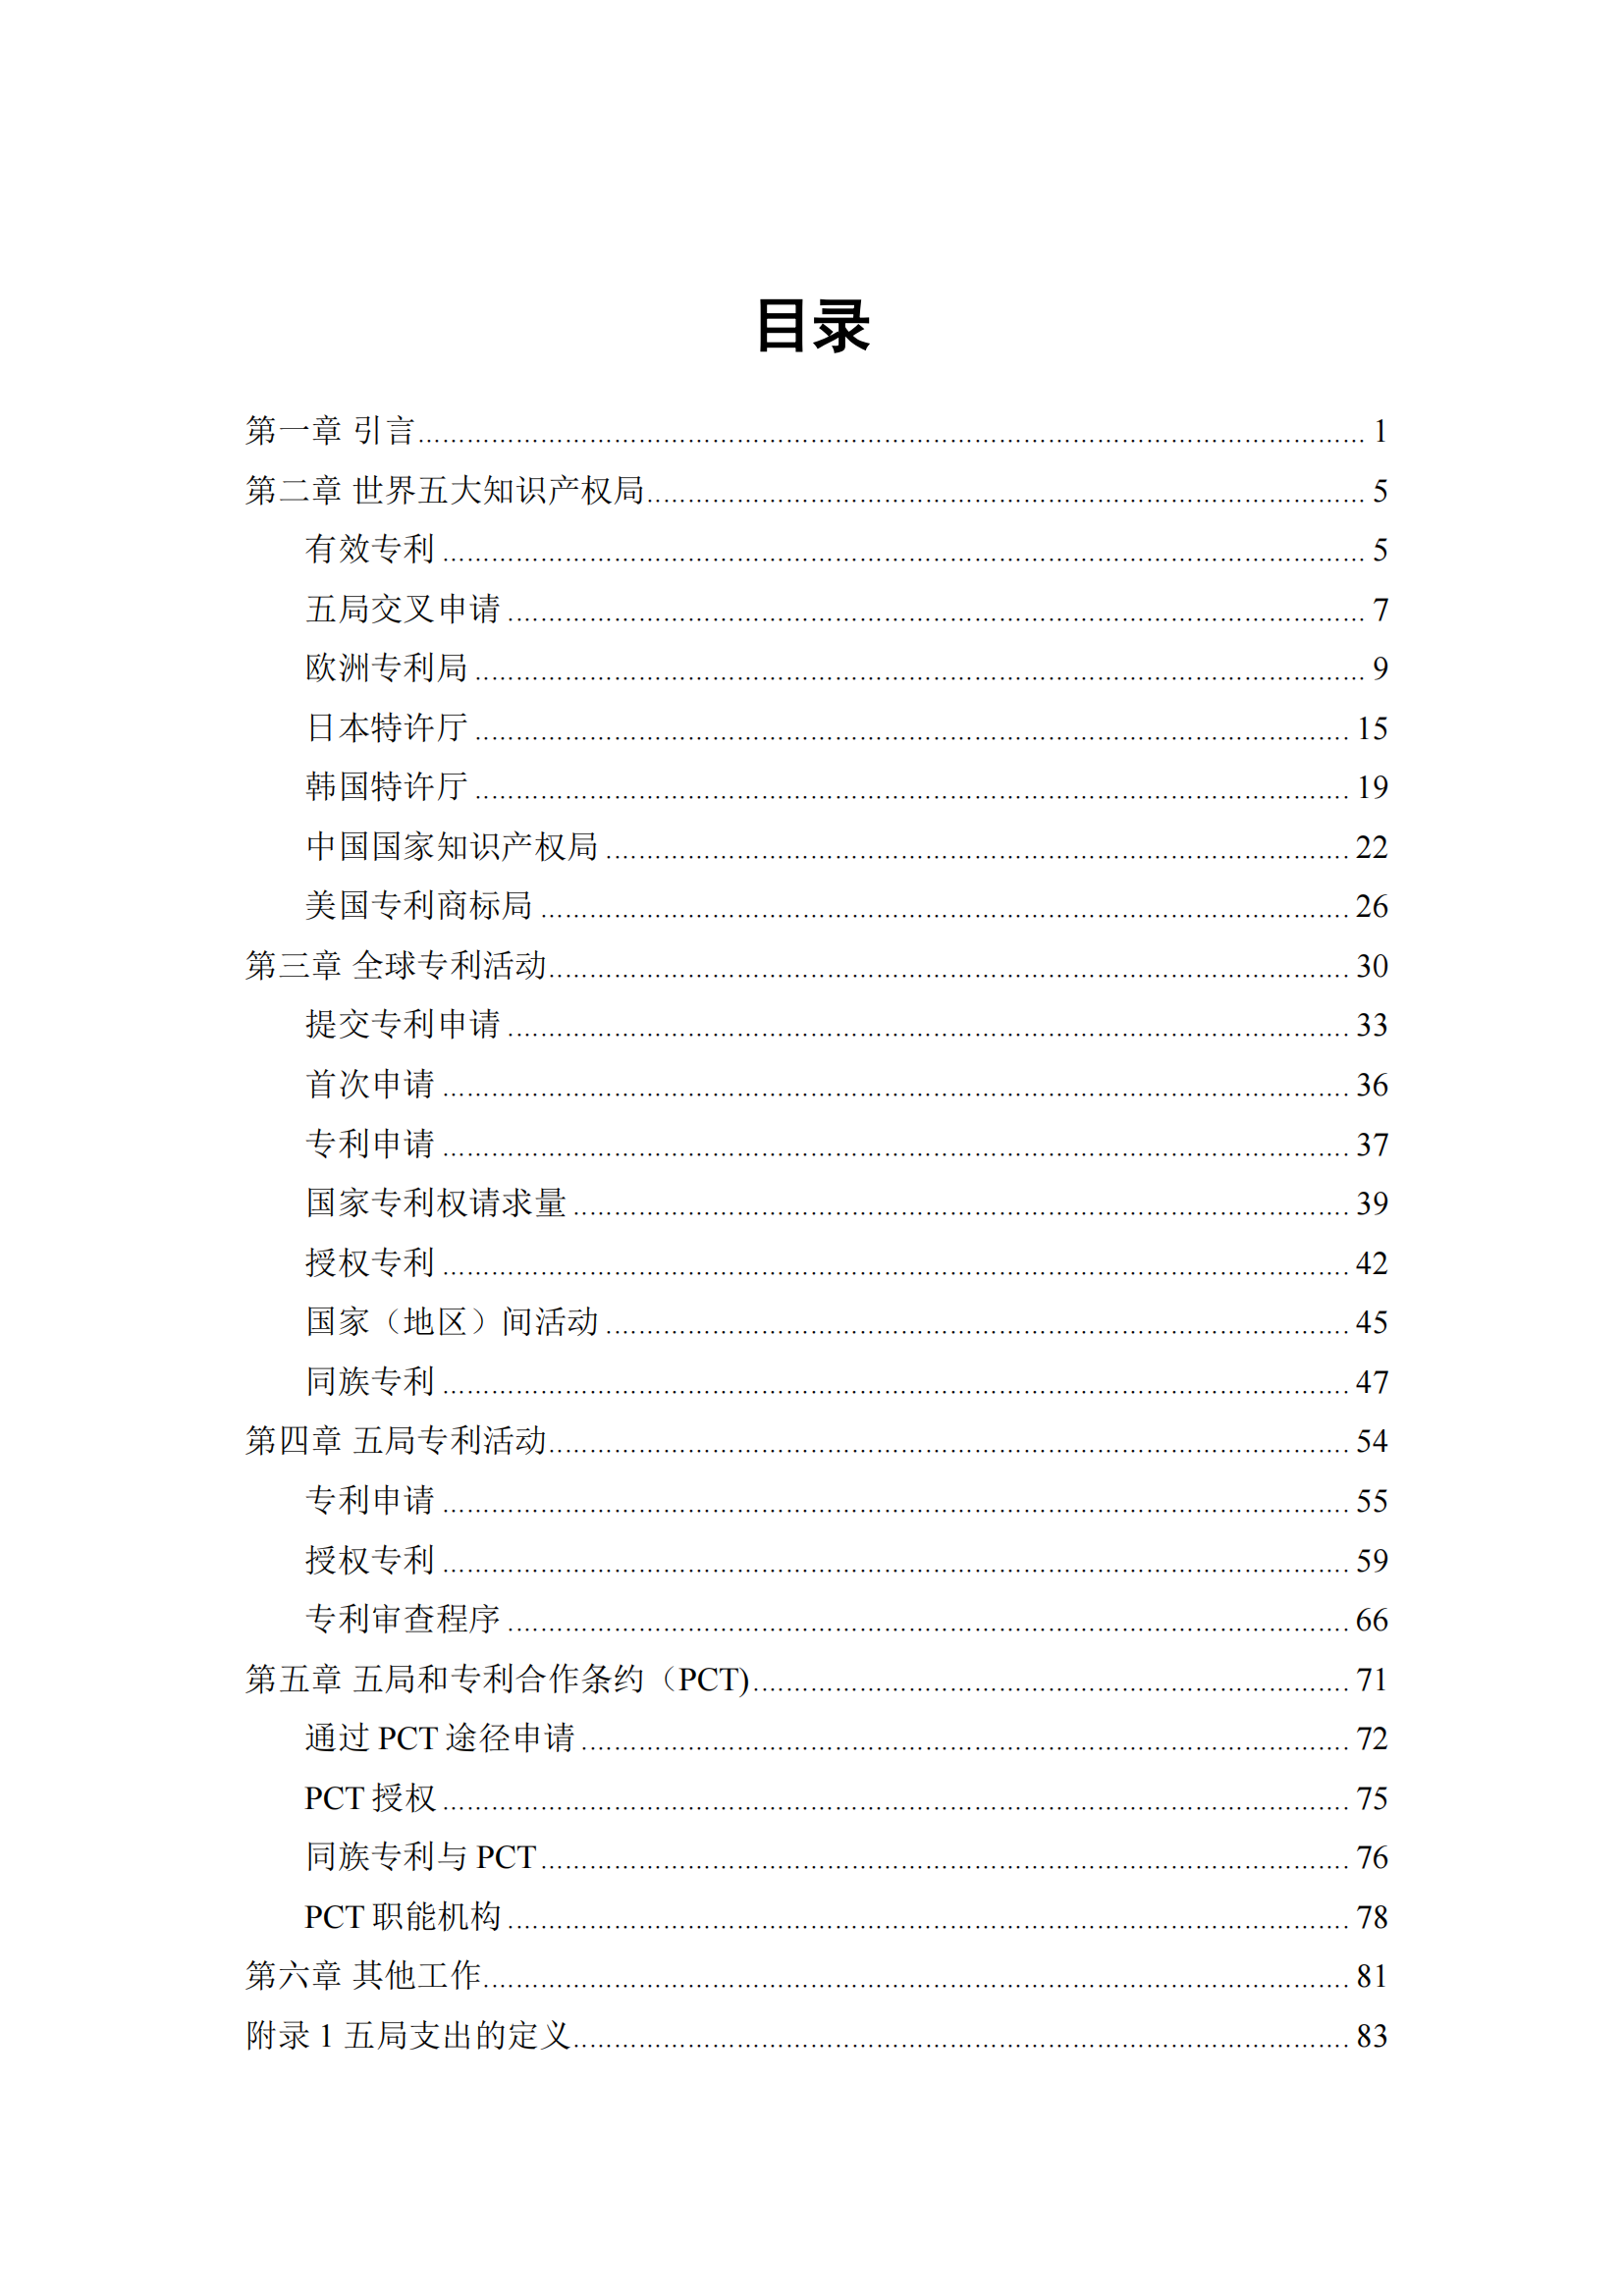 2022年世界五大知识产权局统计报告（中文版）全文发布！